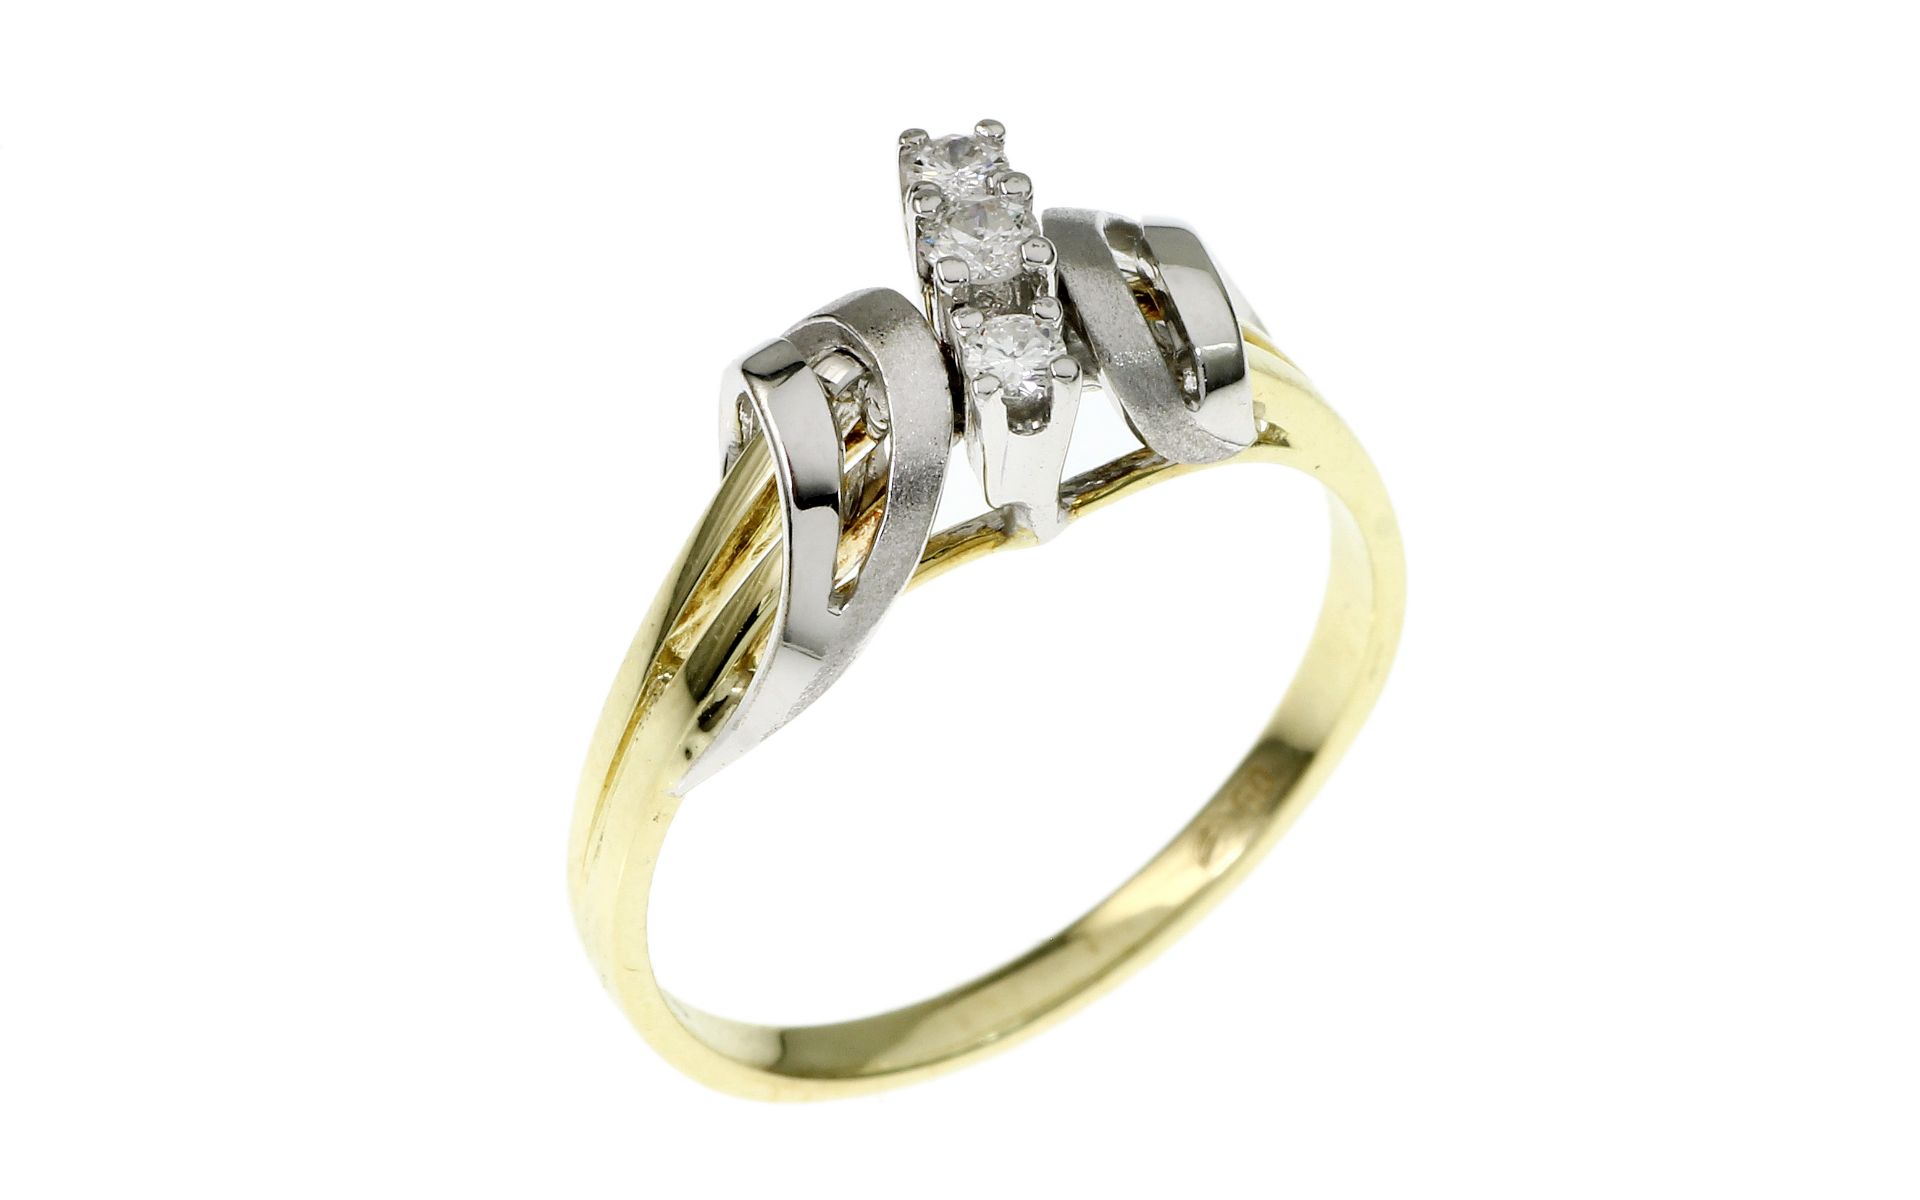 Ring 2.93g 585/- Gelbgold und Weissgold mit 3 Diamanten zus. ca. 0.13 ct. G/si-pi. Ringgroesse ca. 5